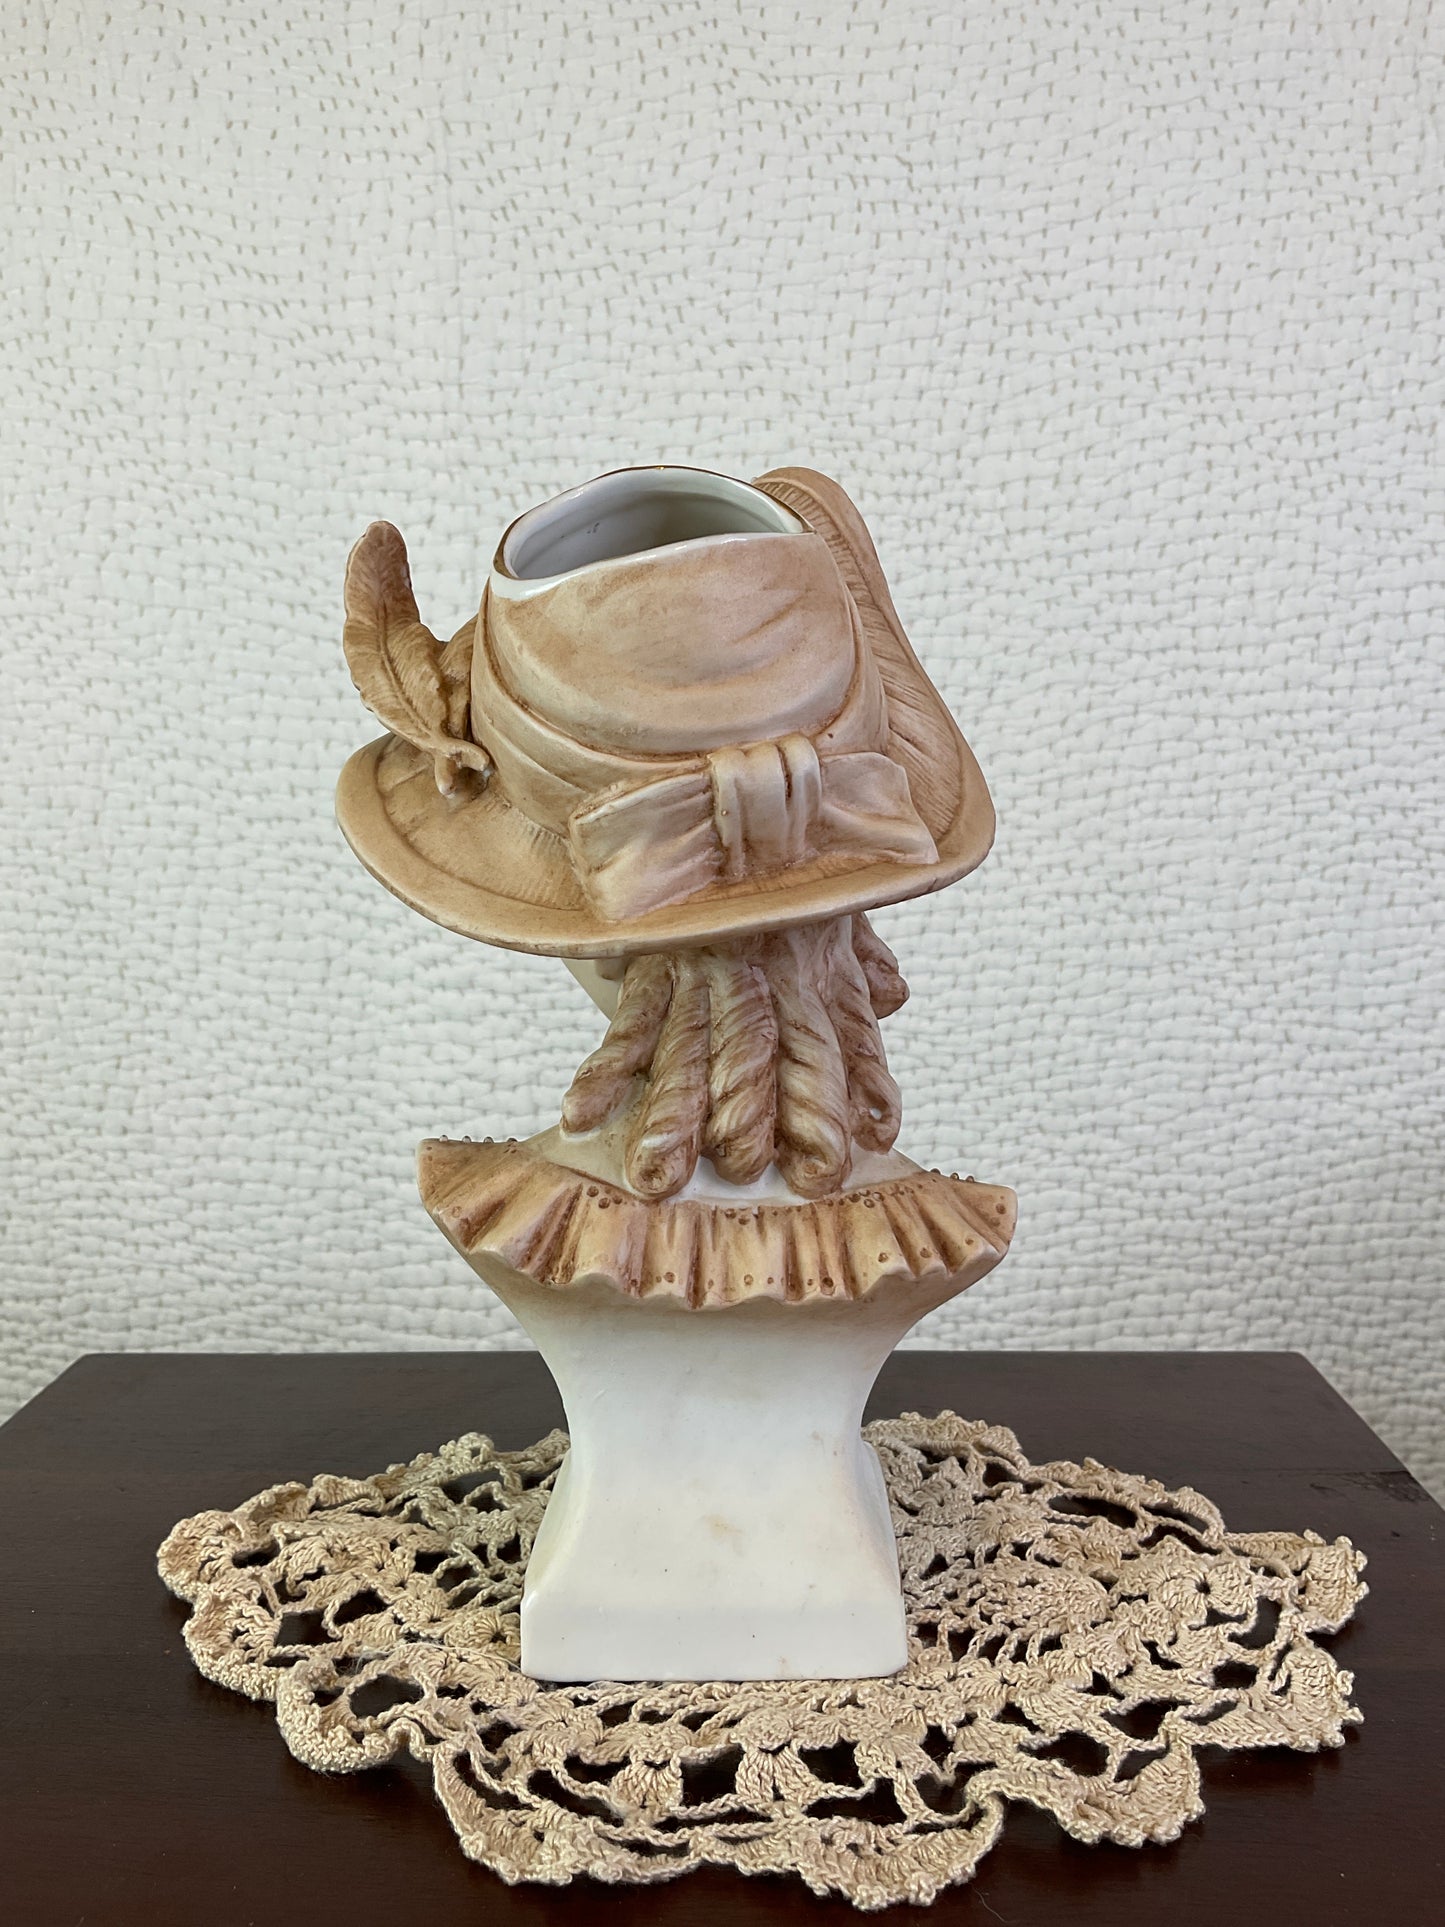 Vintage Porcelain Vase Heads, Victorian Man & Woman